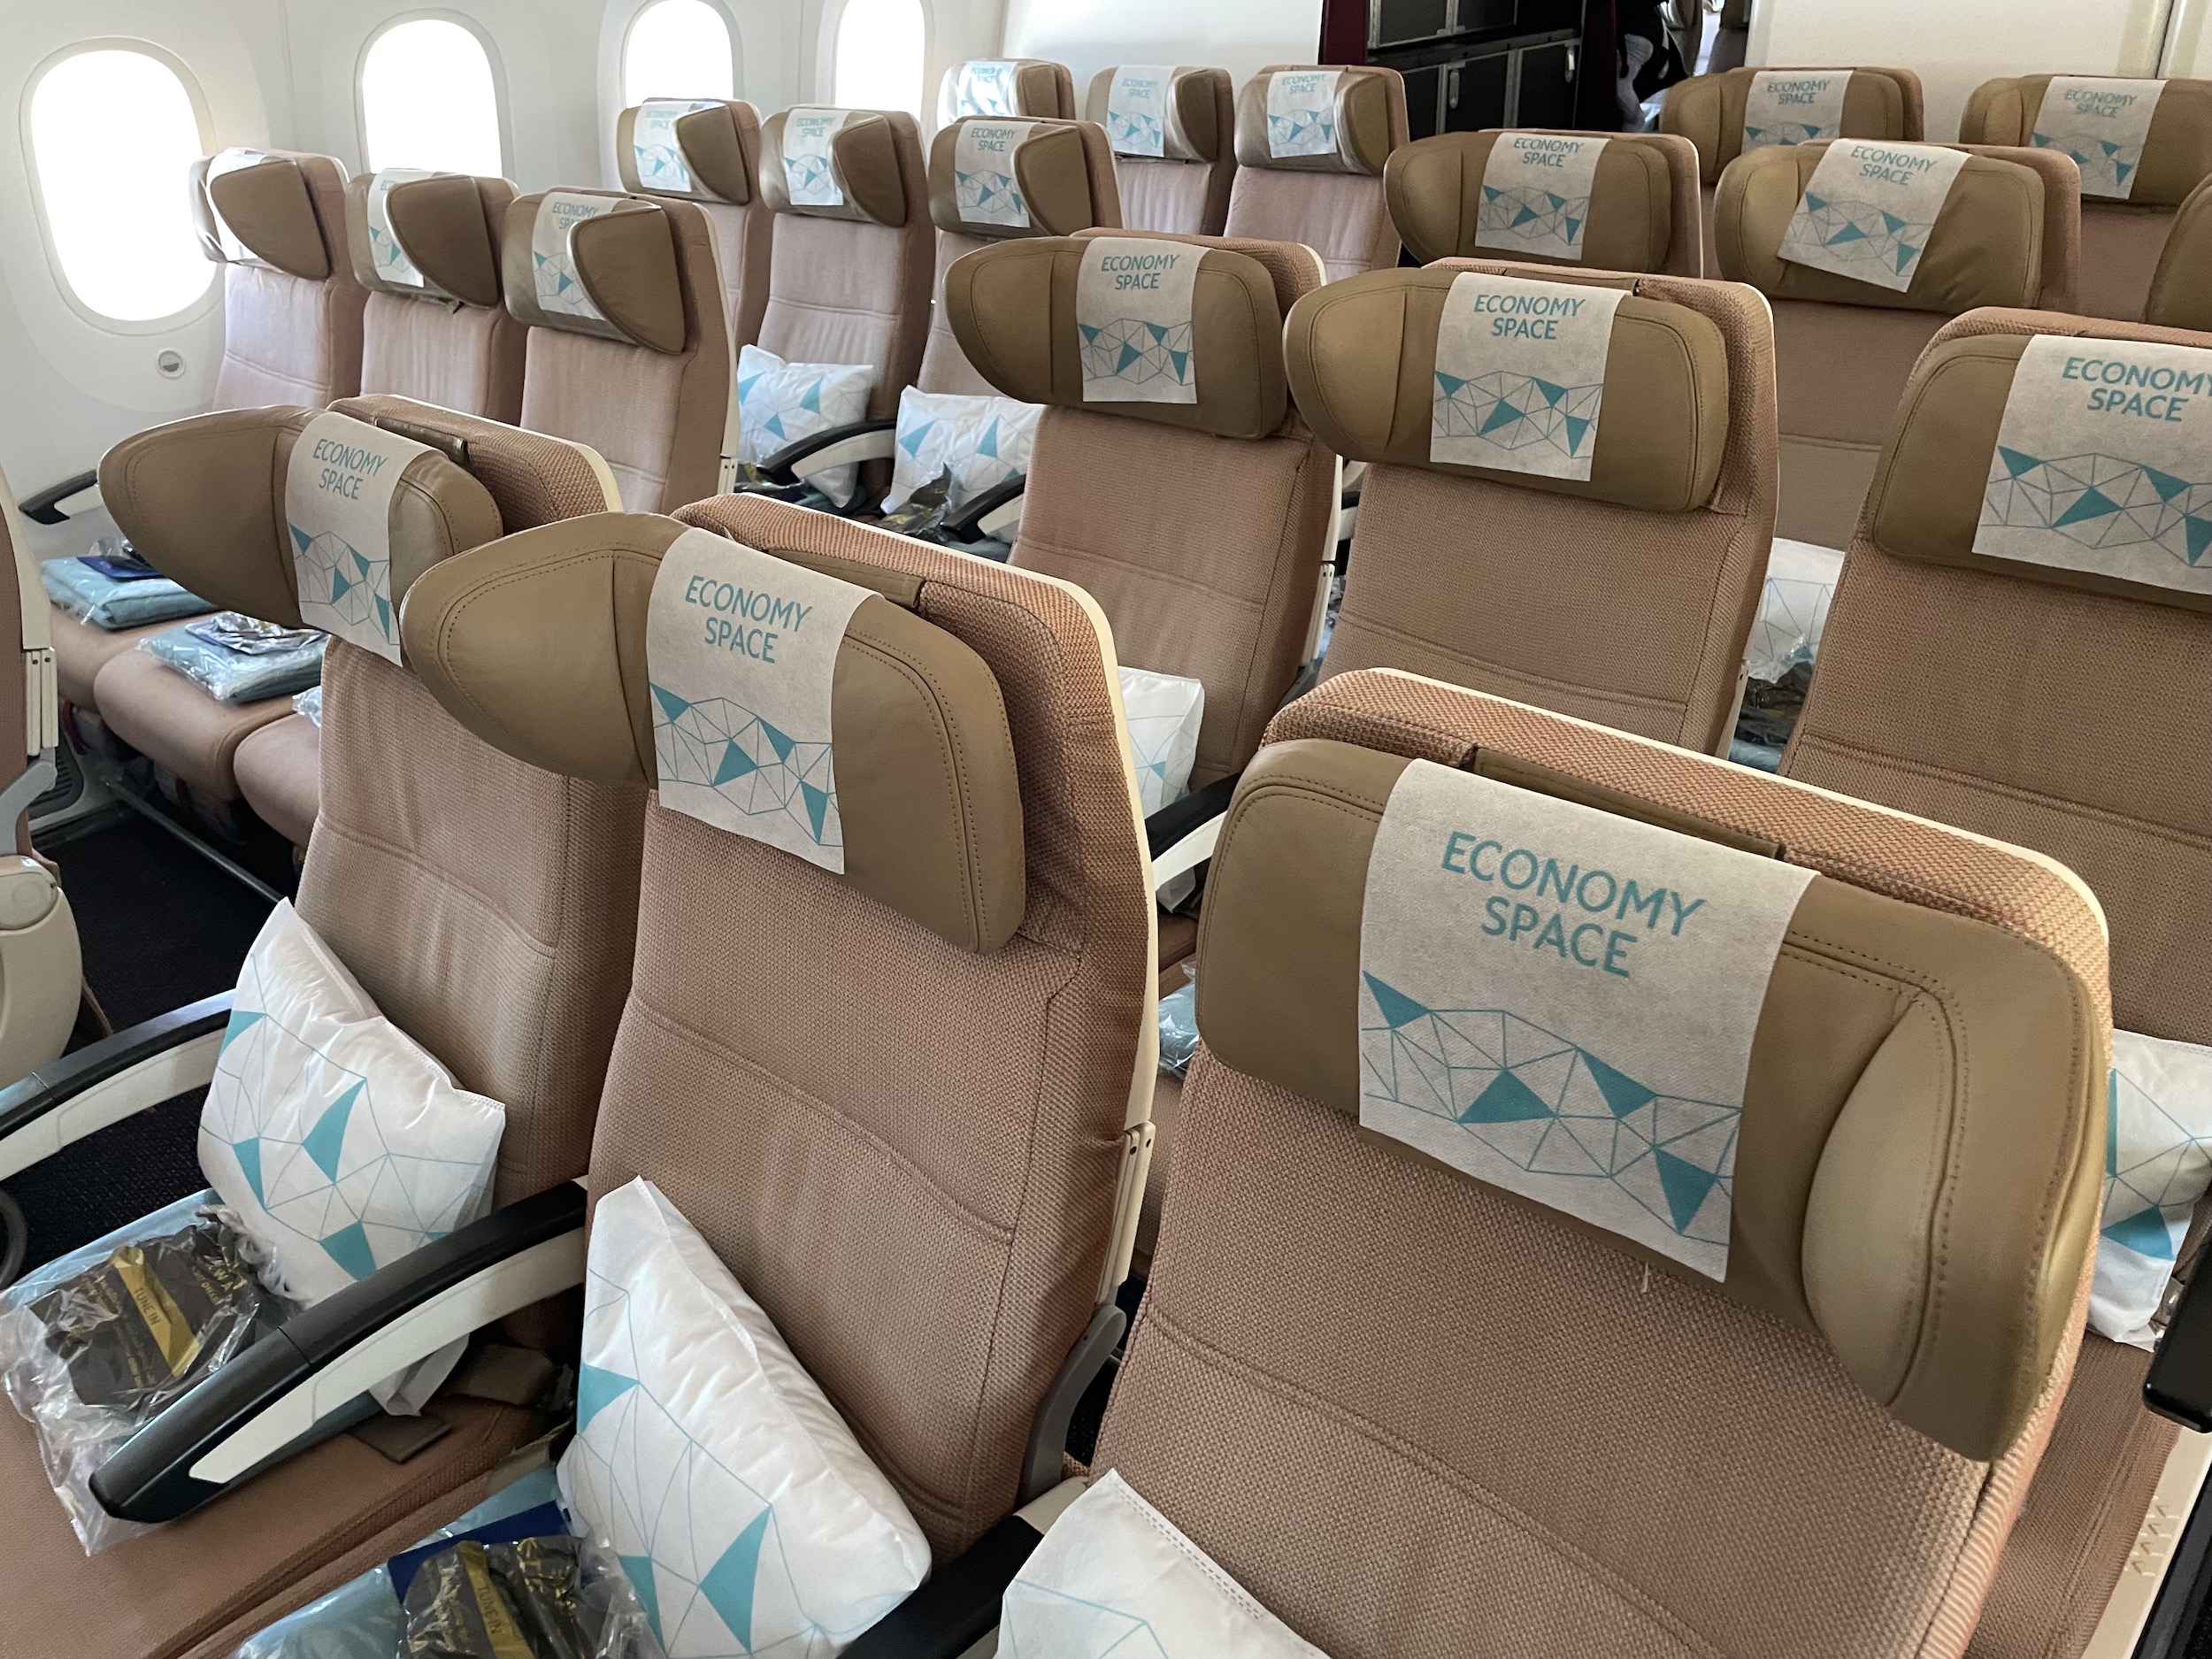 Etihad Economy Space cabin on 787